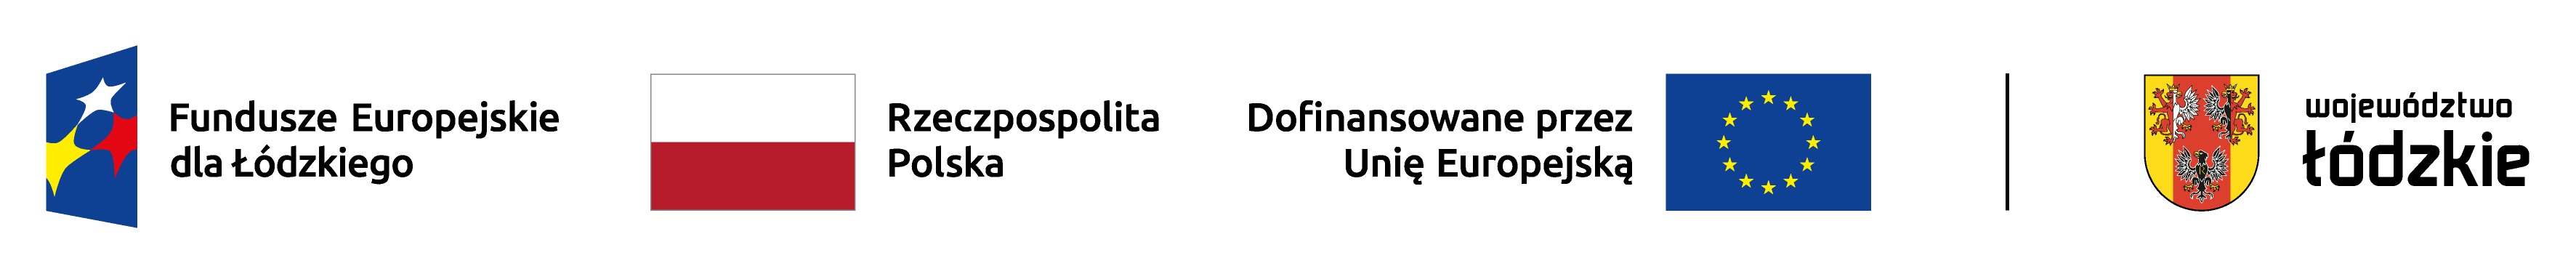 Plik zawiera logotypy Funduszy Europejskich dla Łódzkiego, flagę RP, Unii Europejskiej oraz Województwa Łódzkiego ustawionych poziomo w pełnej kolorystyce.